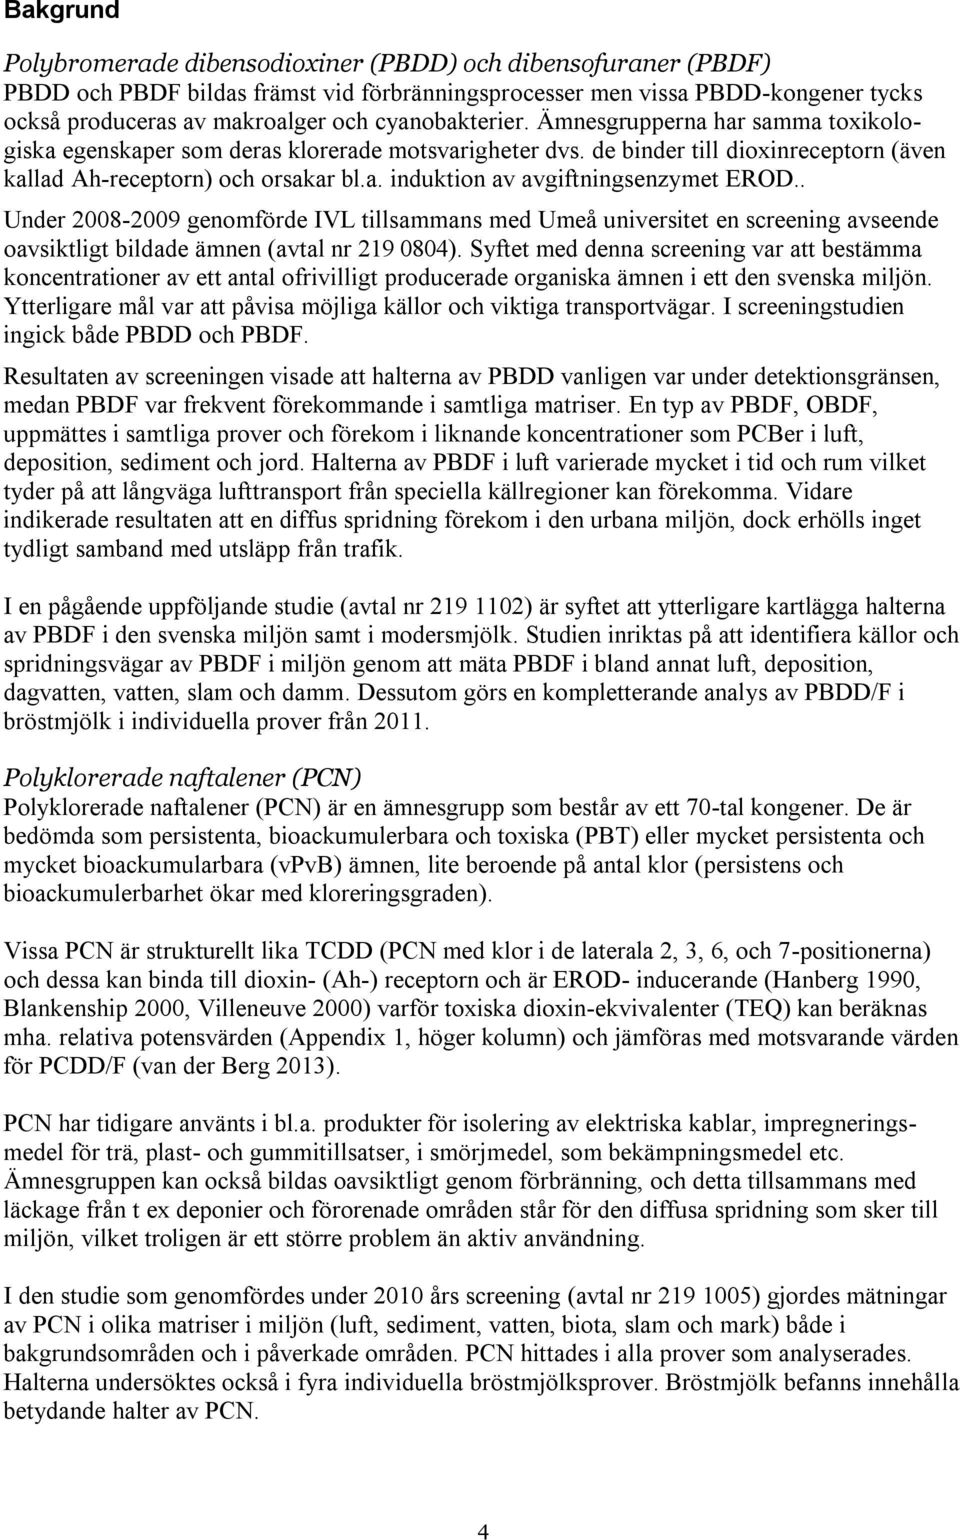 . Under 2008-2009 genomförde IVL tillsammans med Umeå universitet en screening avseende oavsiktligt bildade ämnen (avtal nr 219 0804).